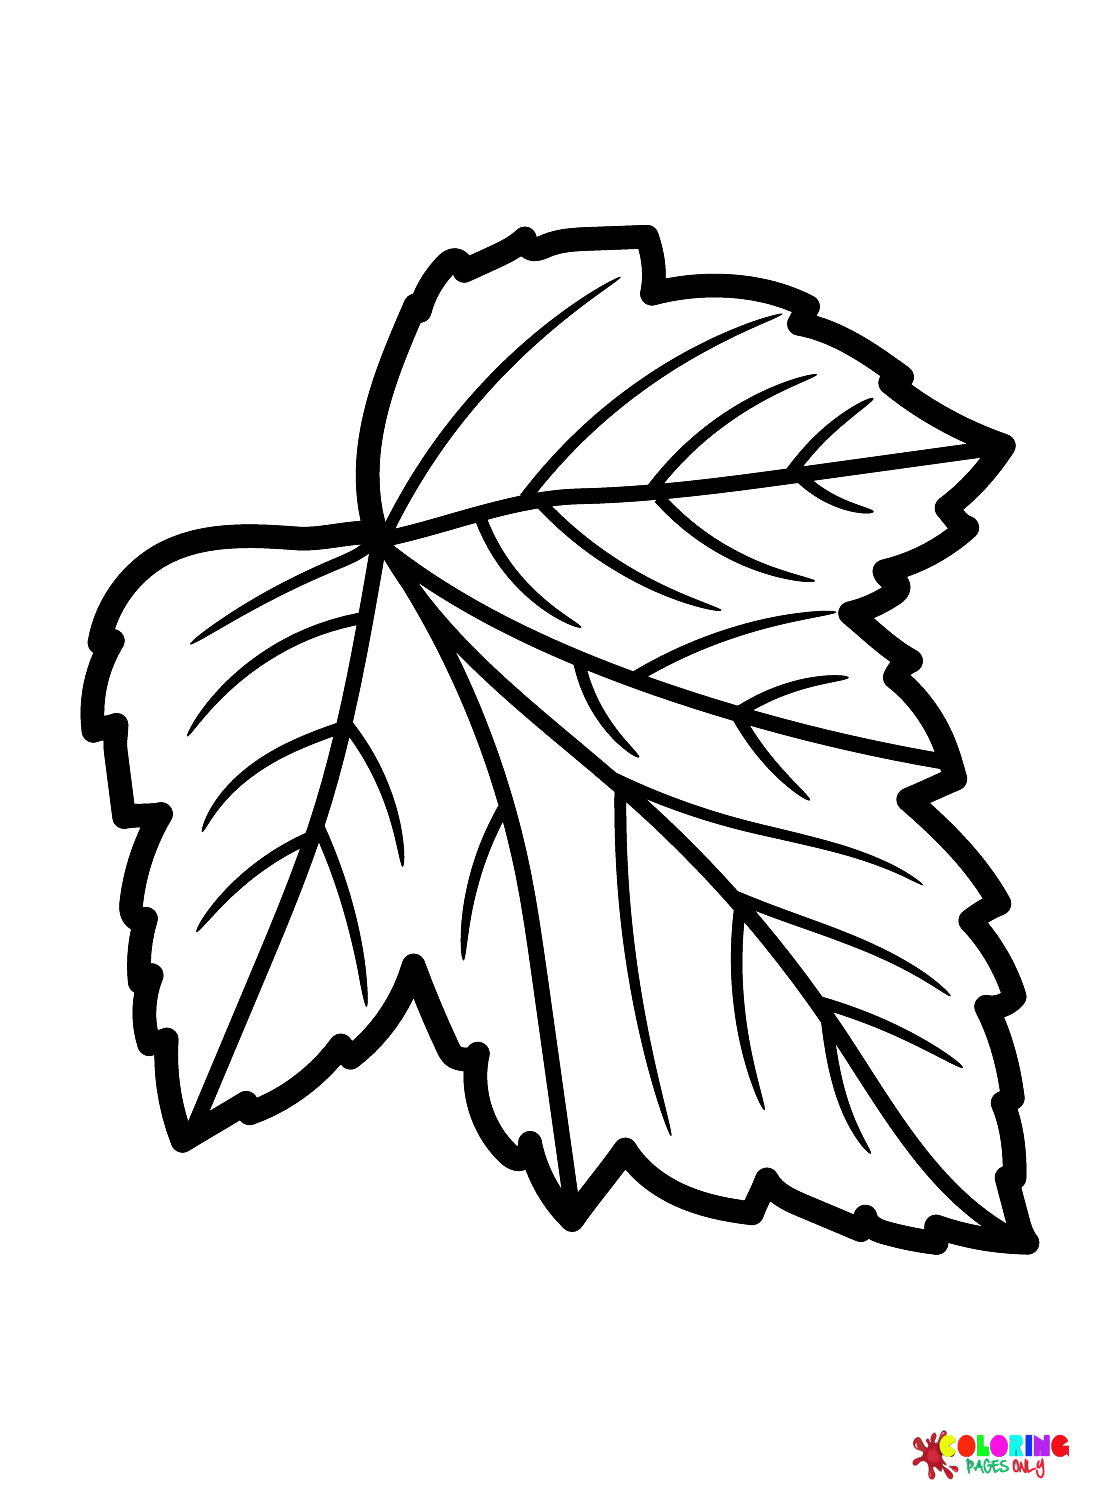 Раскраска лист черной смородины